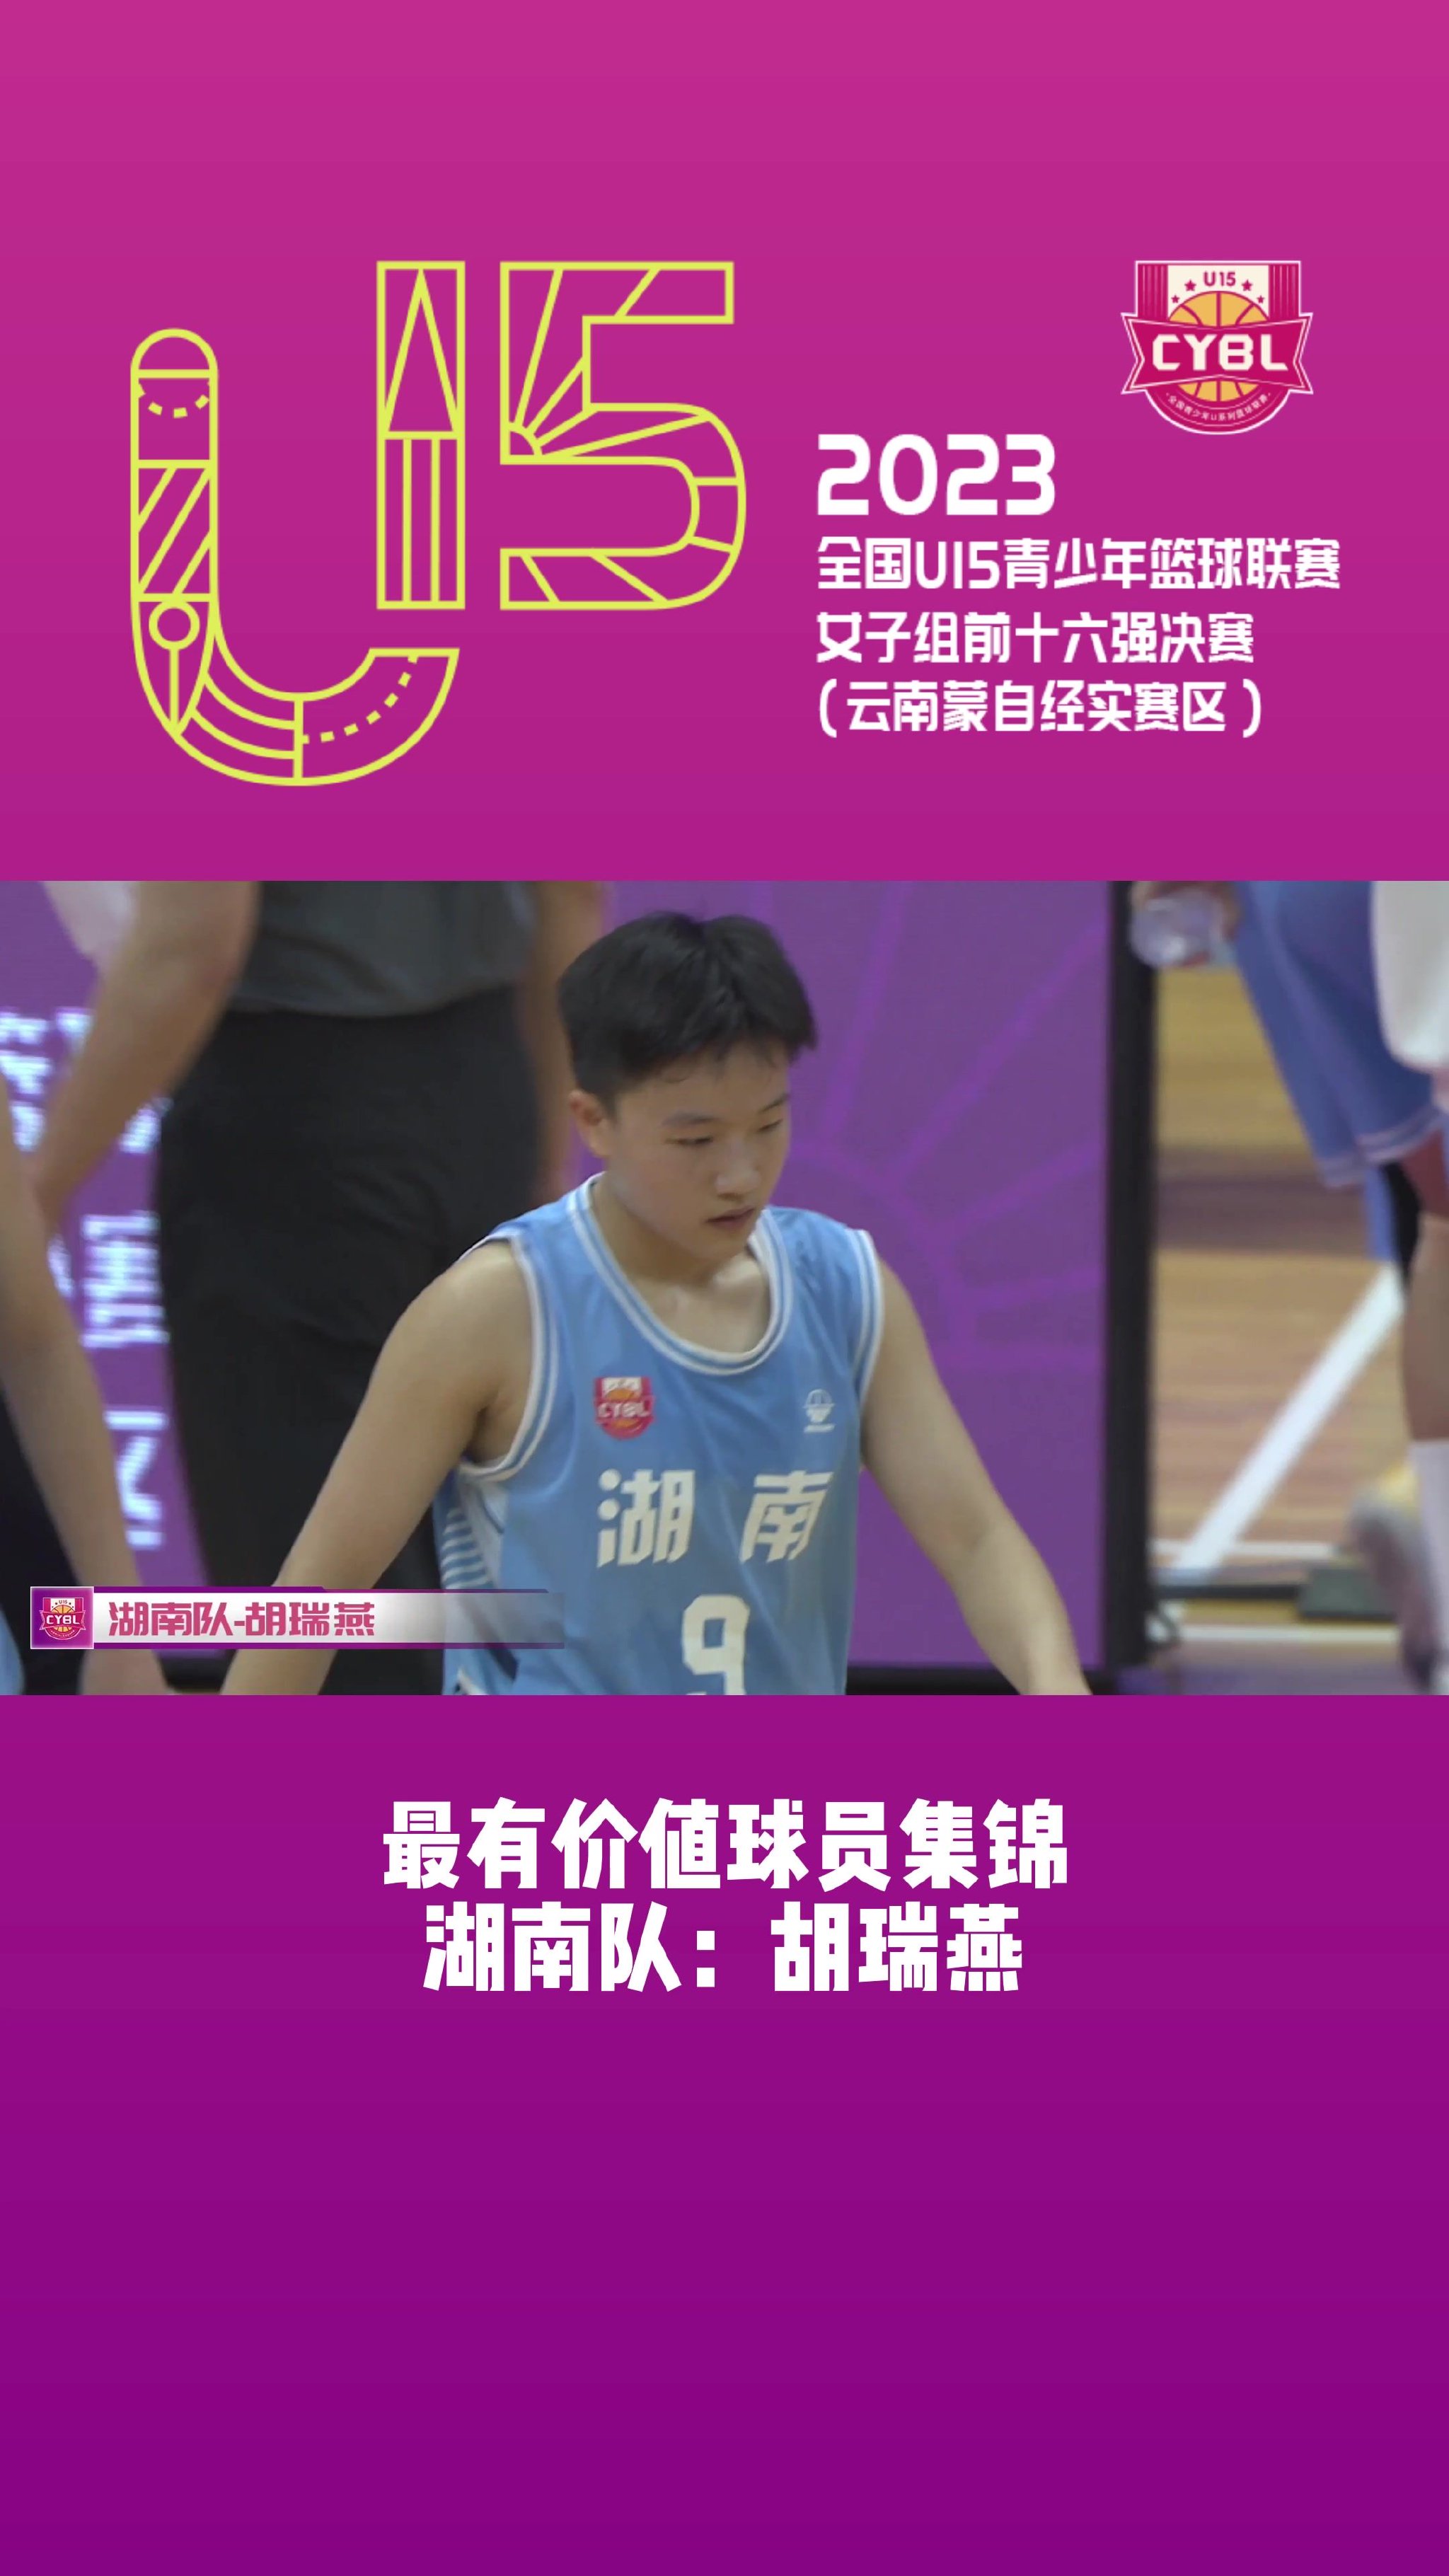 里突外投！来看U15青少年篮球联赛女子组决赛MVP胡瑞燕集锦